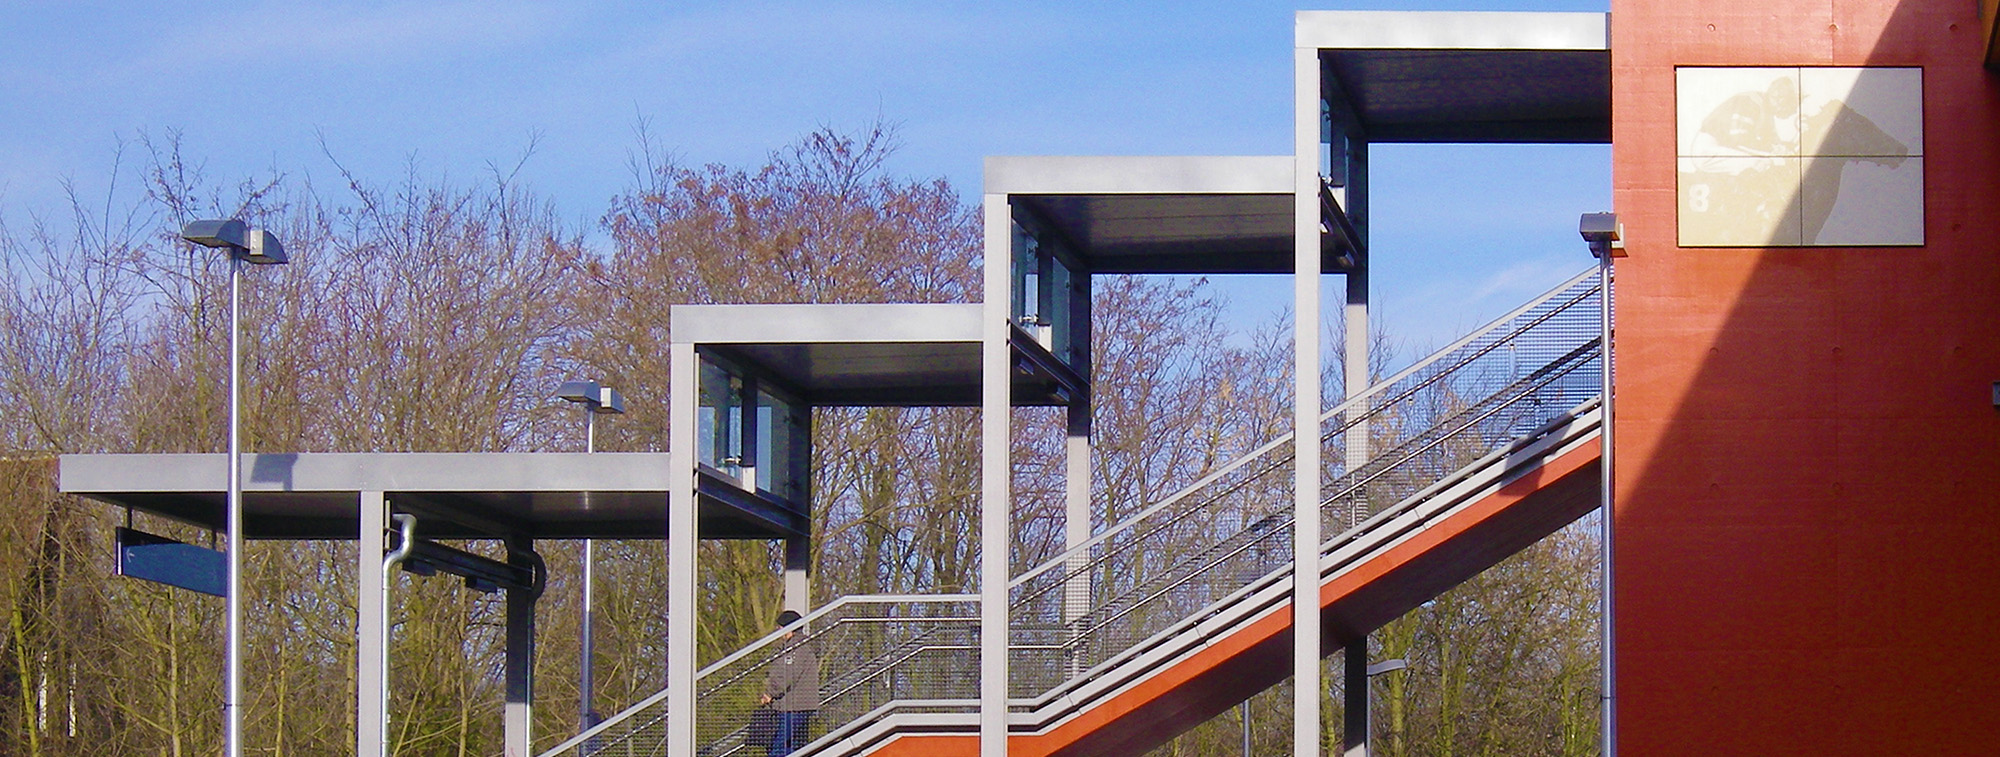 Die Treppe zum S-Bahnsteig mit dem symbolhaften Bezug zur nahe gelegenen Galopprennbahn